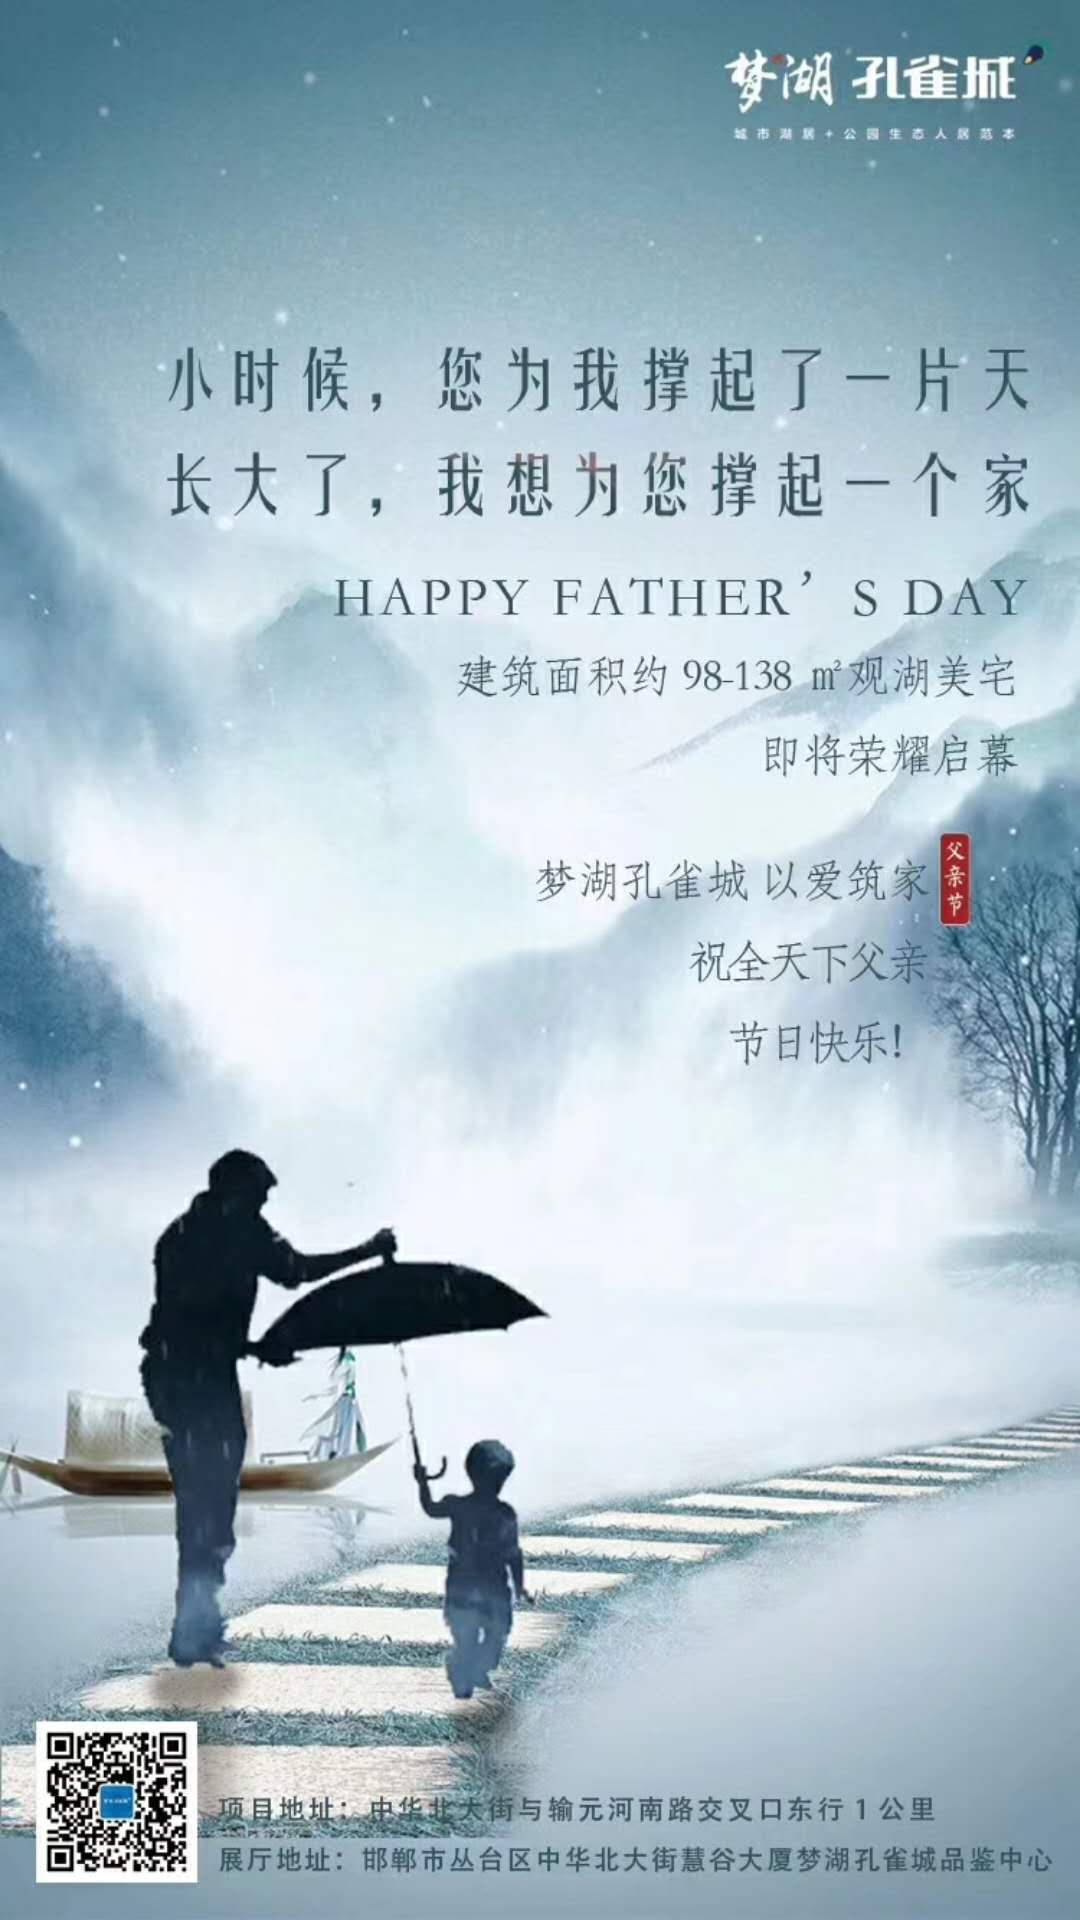 邯郸地产圈礼赞父亲节:愿天下父亲幸福安康